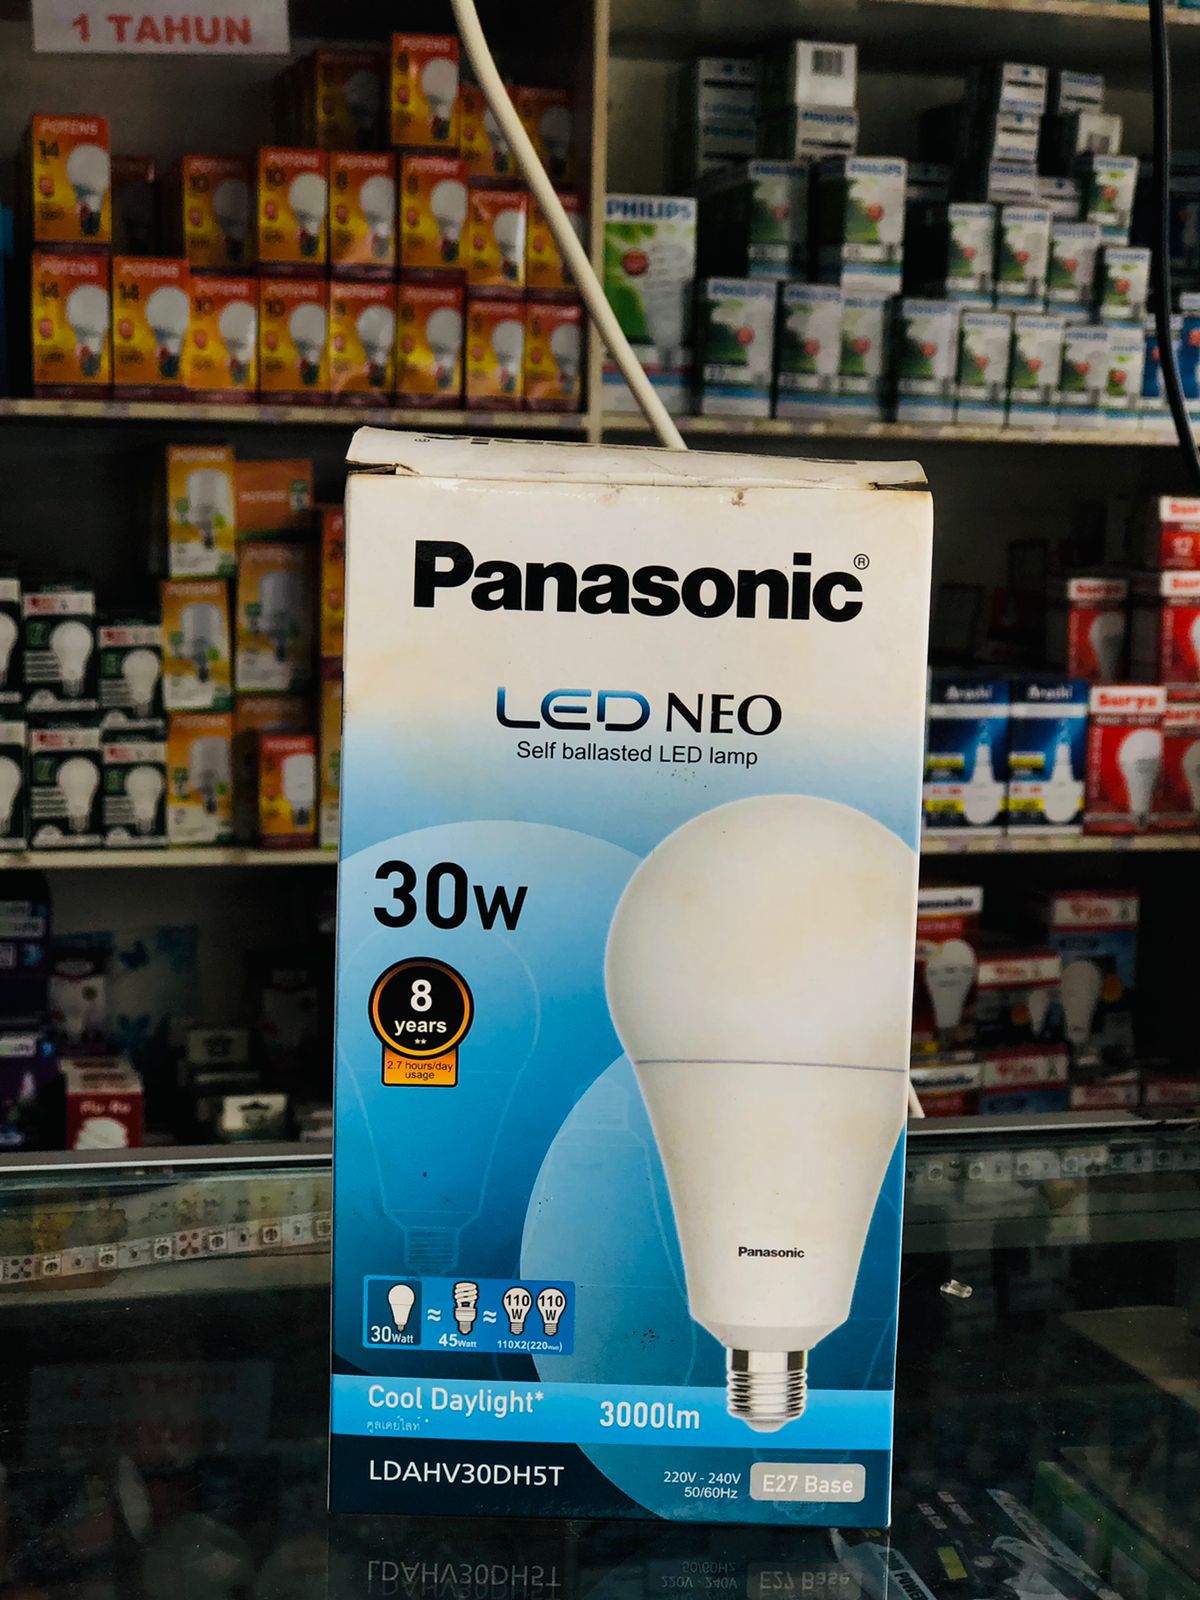 LAMPU PANASONIC LED NEO 30W